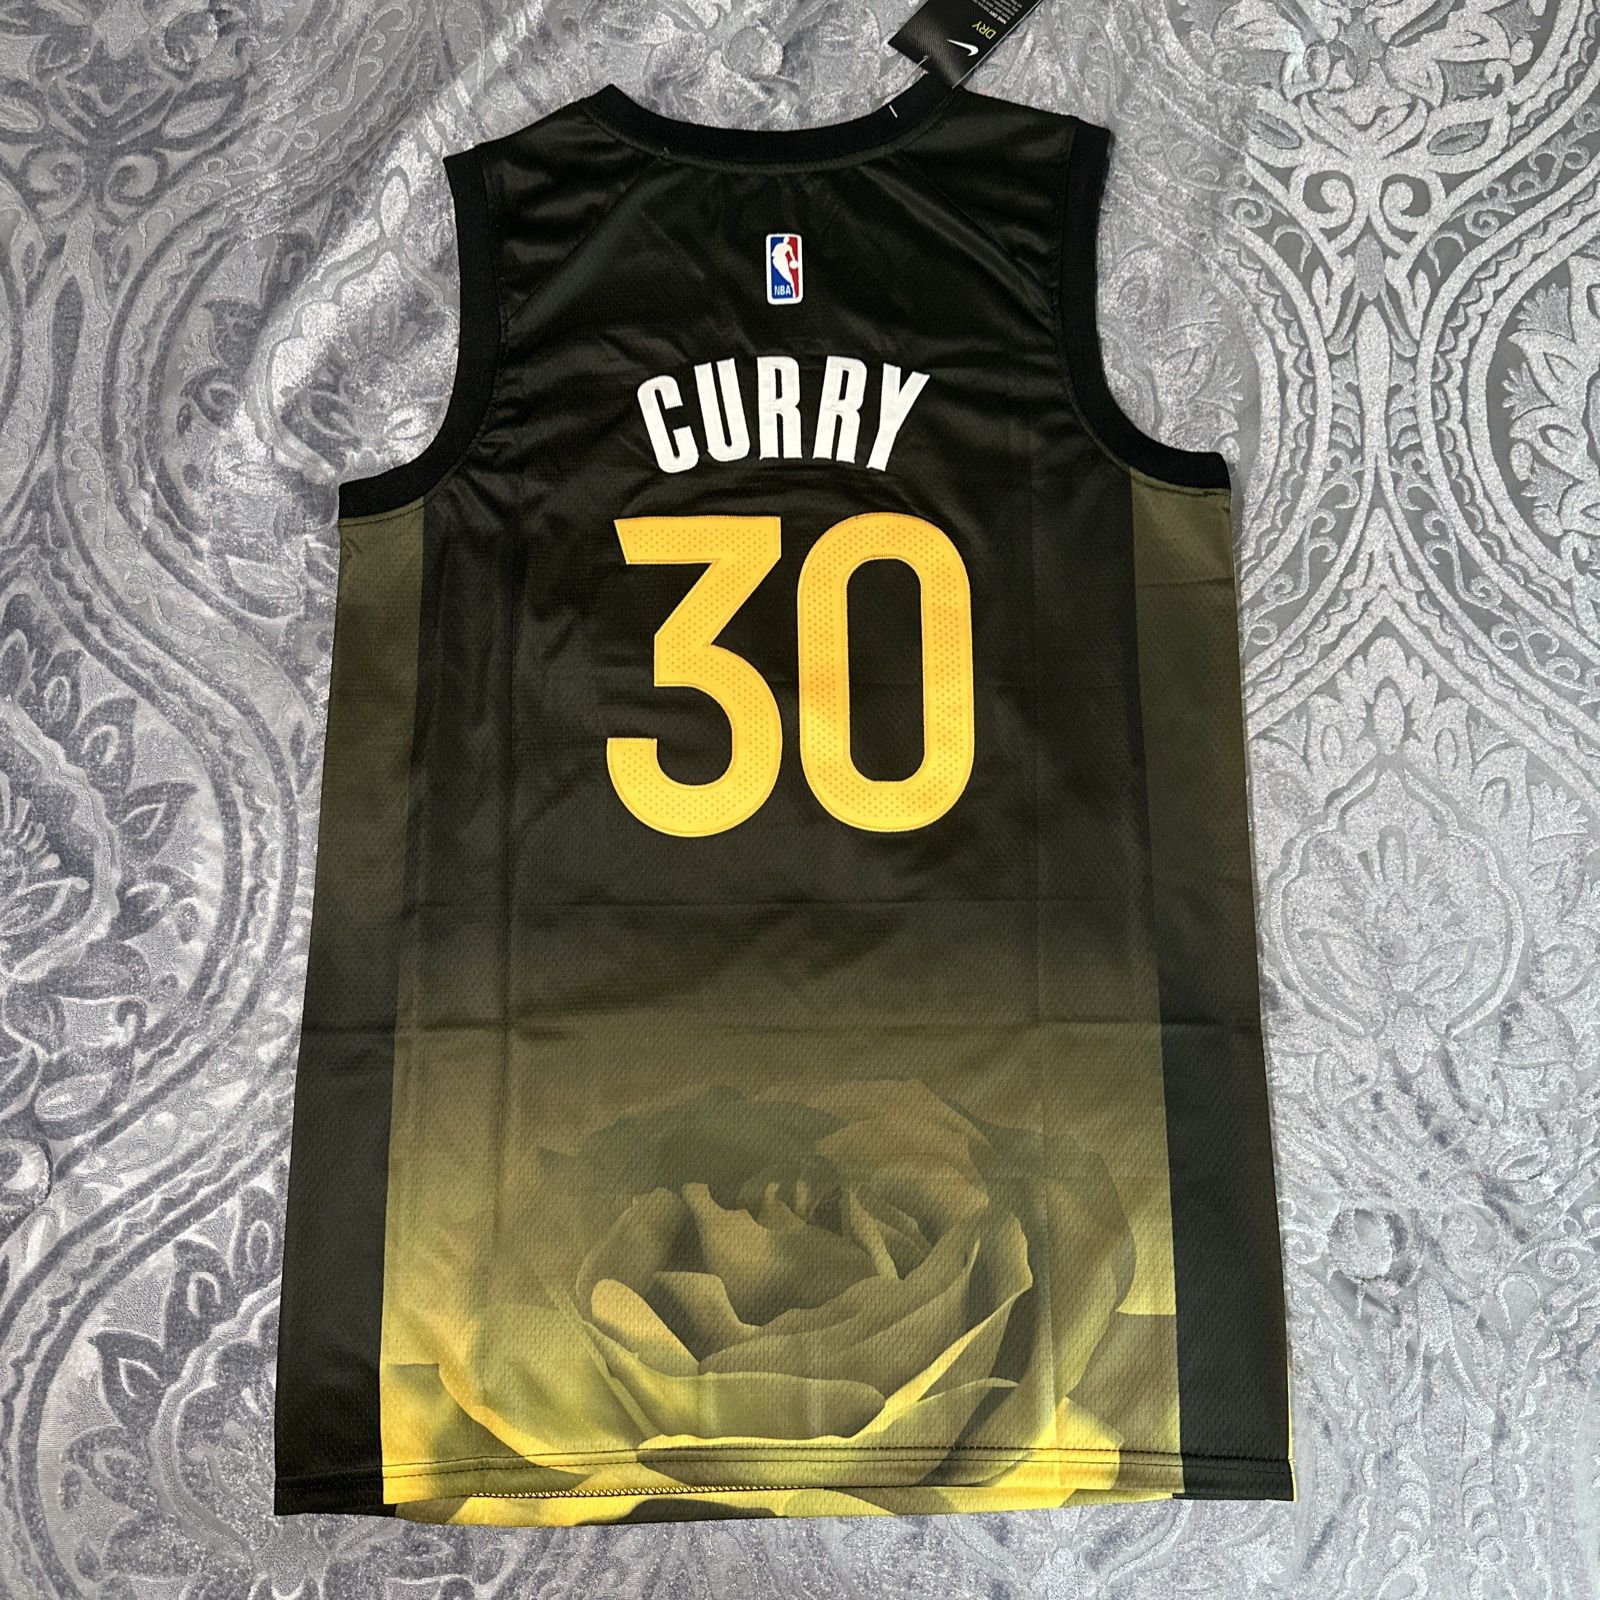 Stephen Curry Swingman jersey L for Sale in Oakland, CA - OfferUp